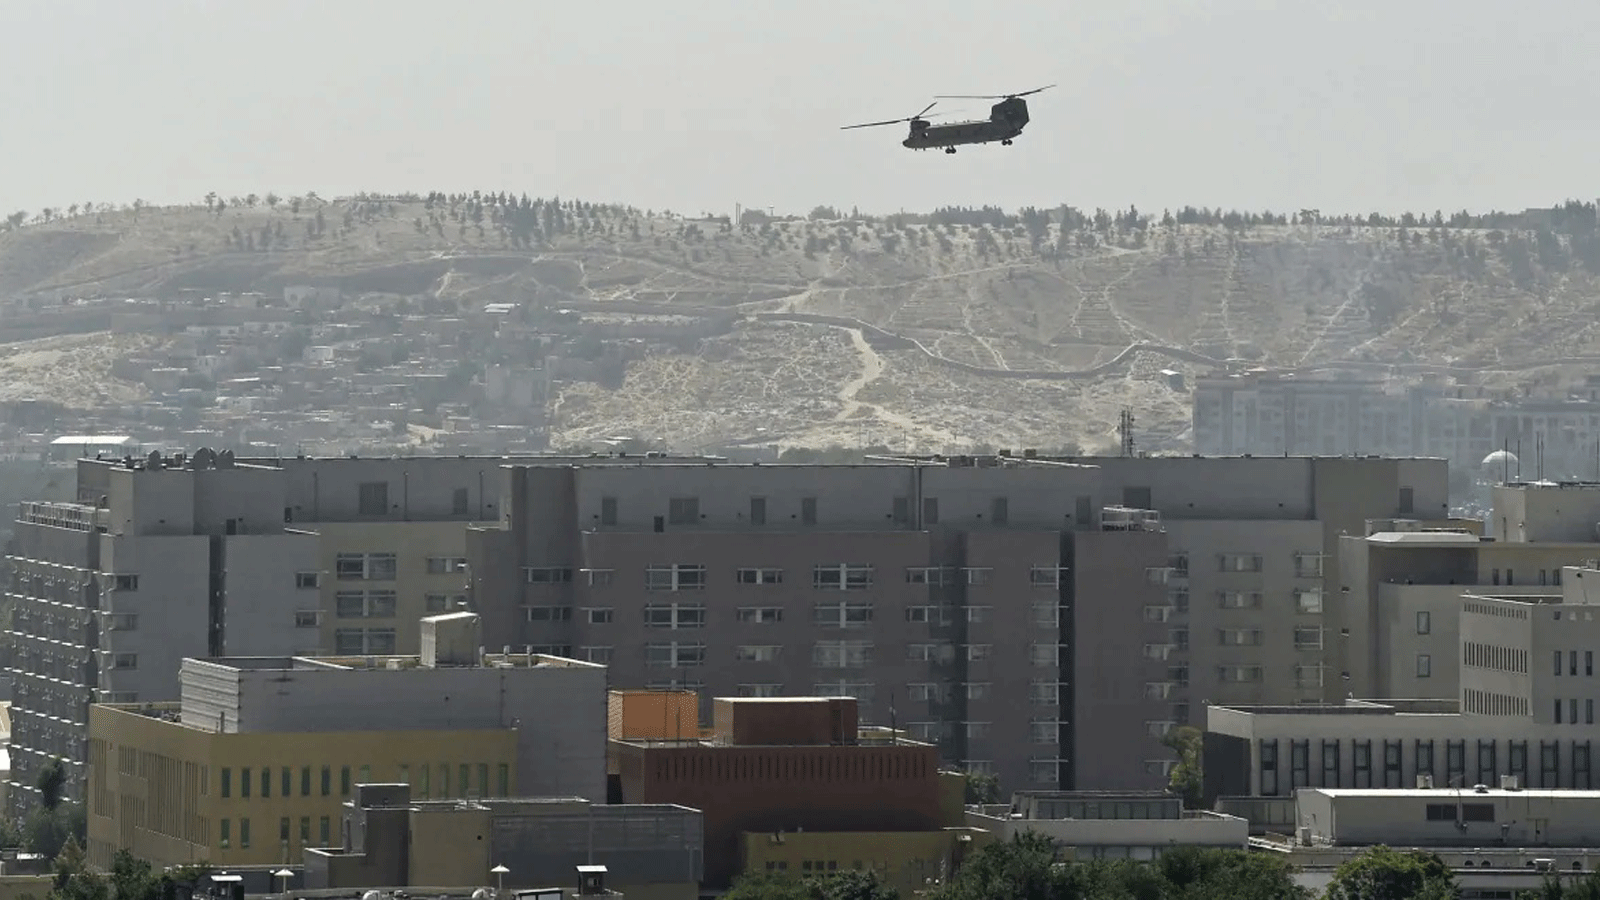 طائرة هليكوبتر عسكرية أميرُكية تحلّق فوق مبنى السفارة الأميركية في كابول يوم الأحد 15 آب/أغسطس 2021